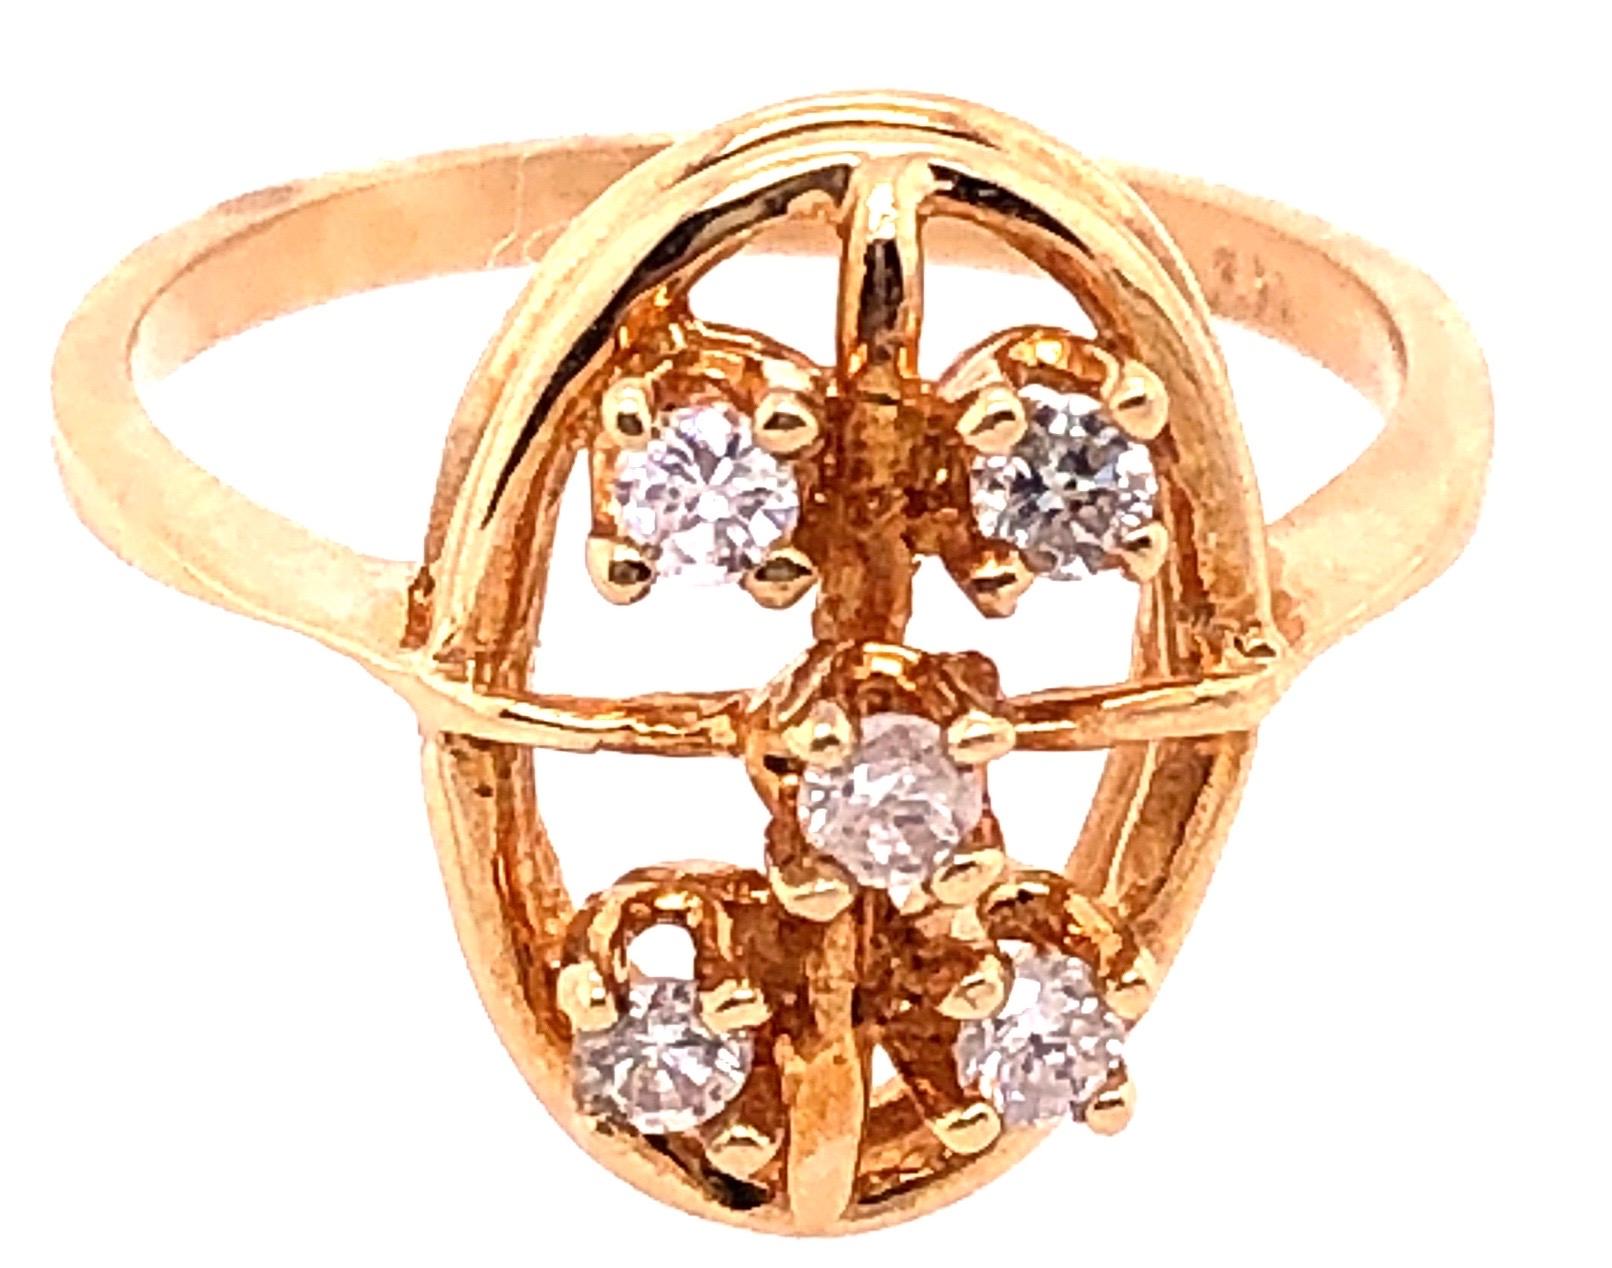 14 Karat Gelbgold Zeitgenössischer Ring mit Diamanten 0,50 Gesamtgewicht der Diamanten.
Größe 7
3 Gramm Gesamtgewicht.